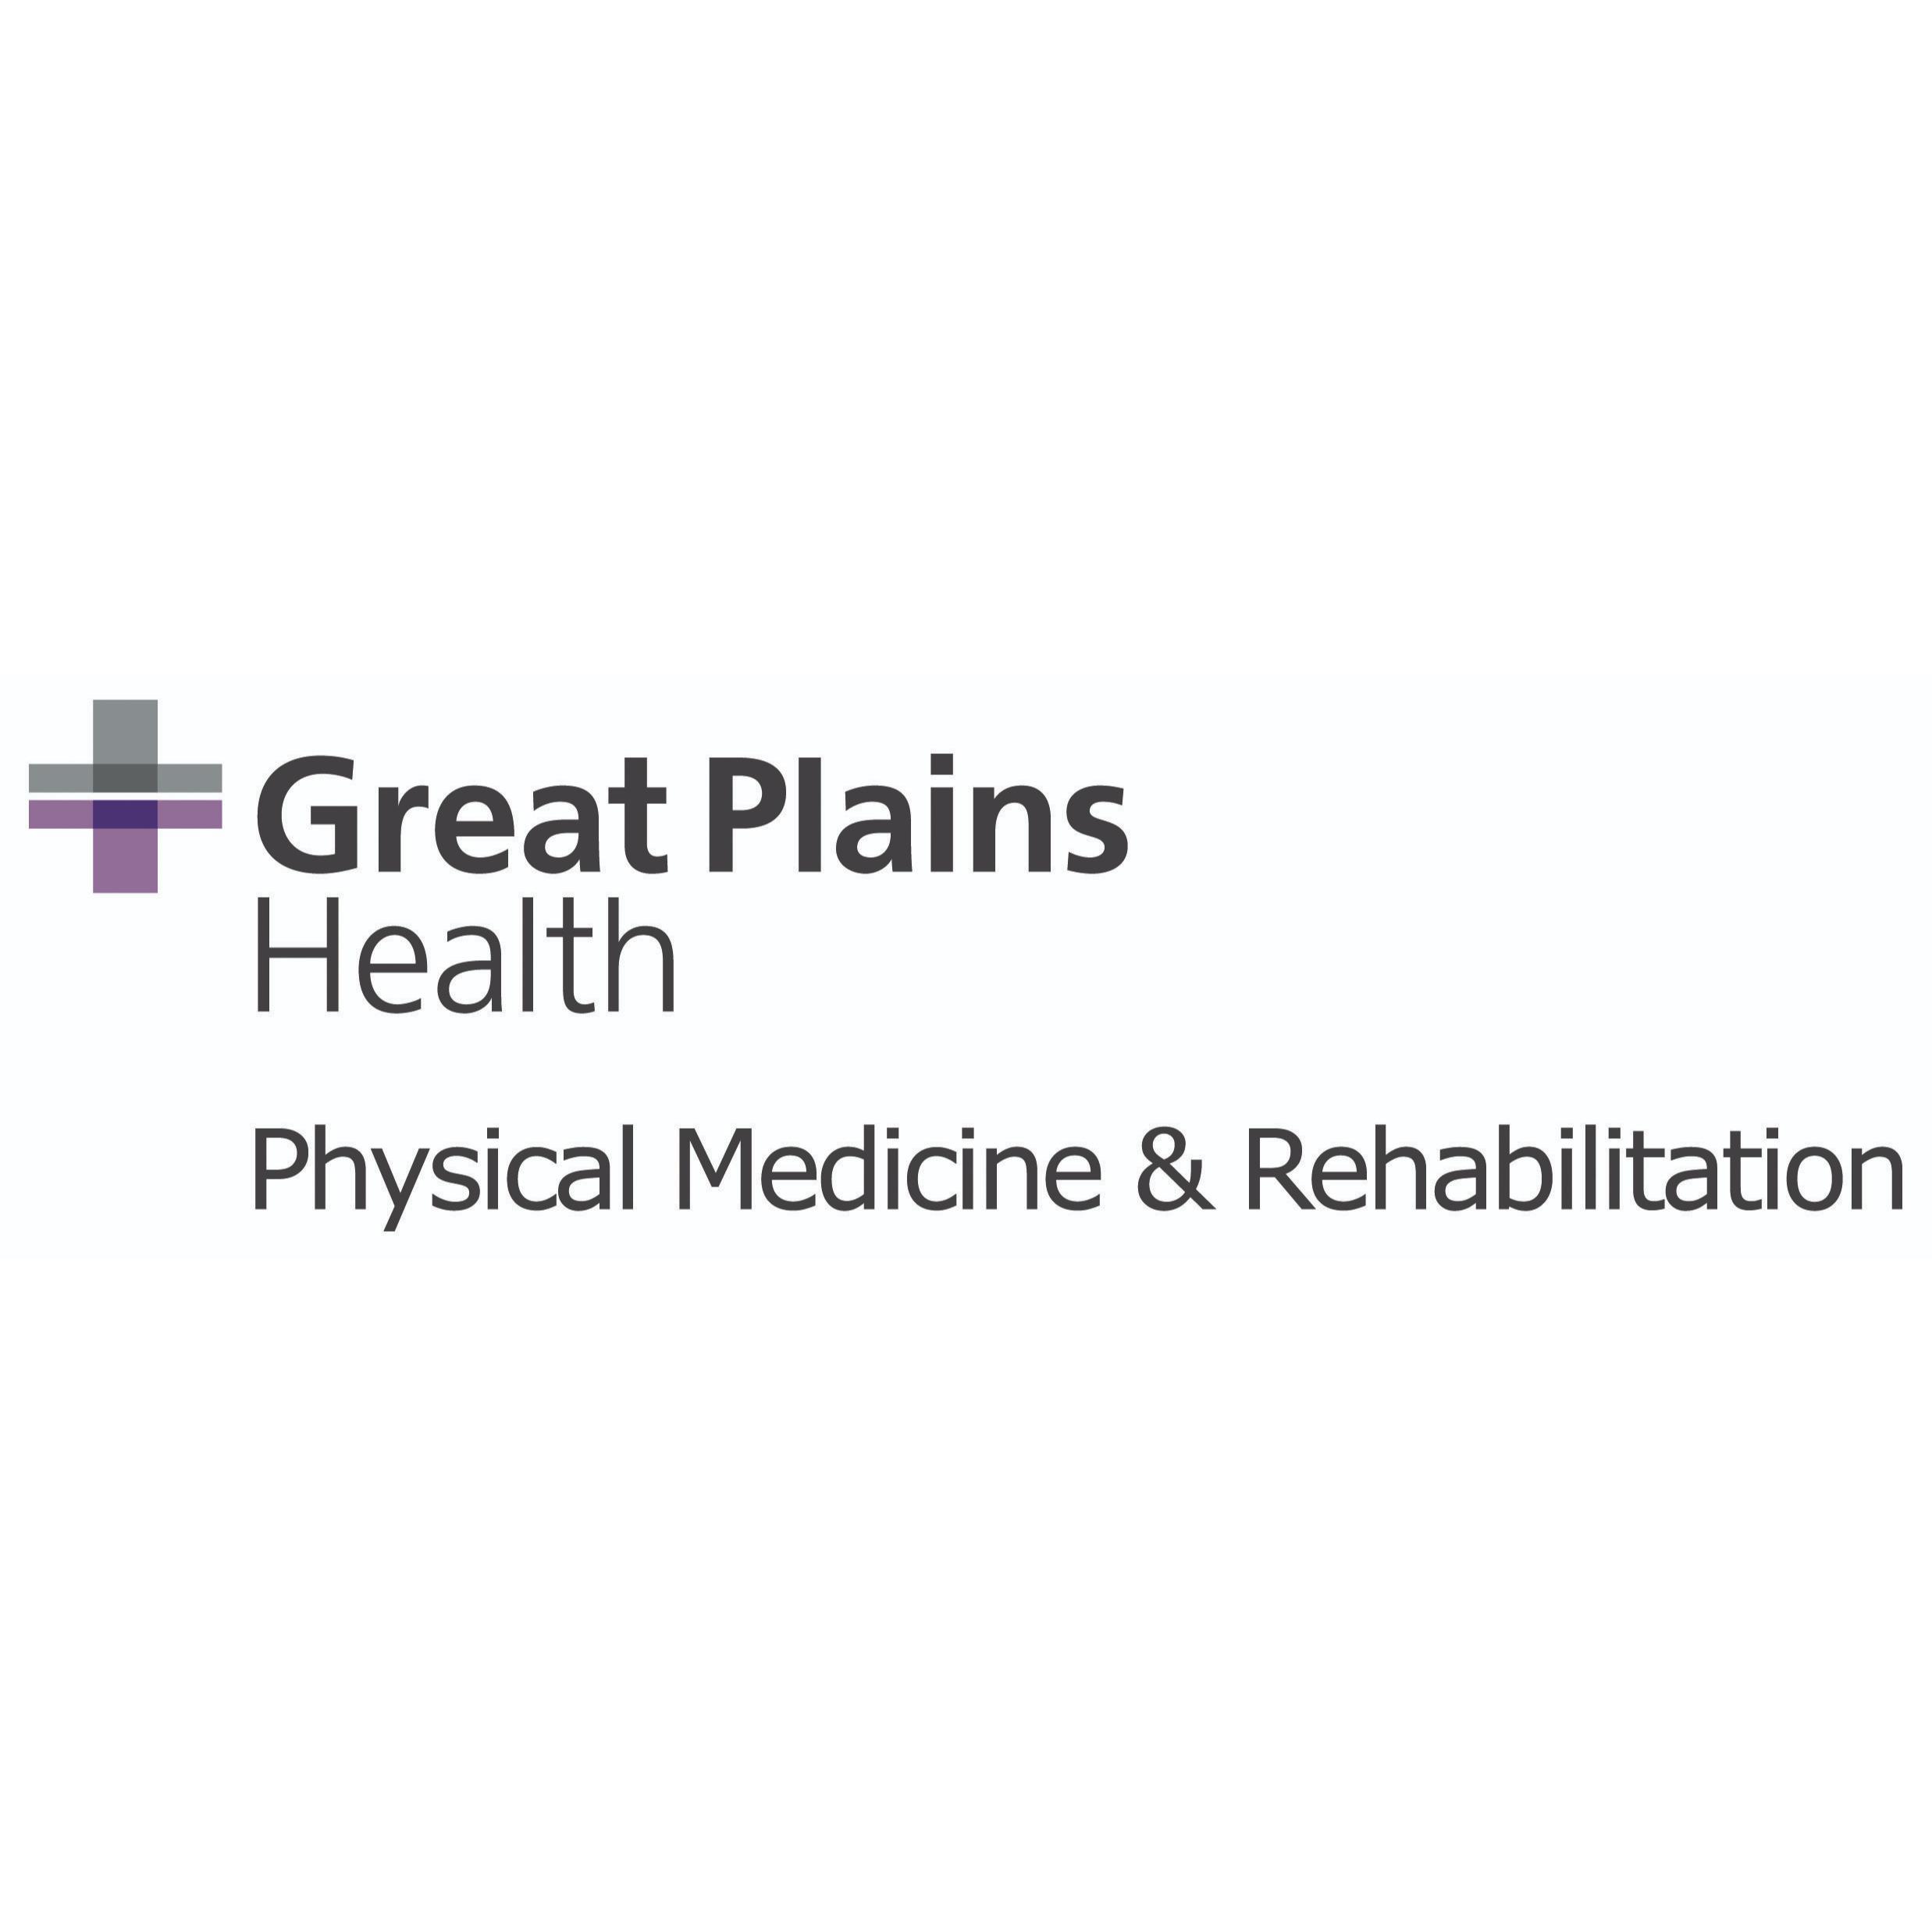 Great Plains Health Physical Medicine & Rehabilitation